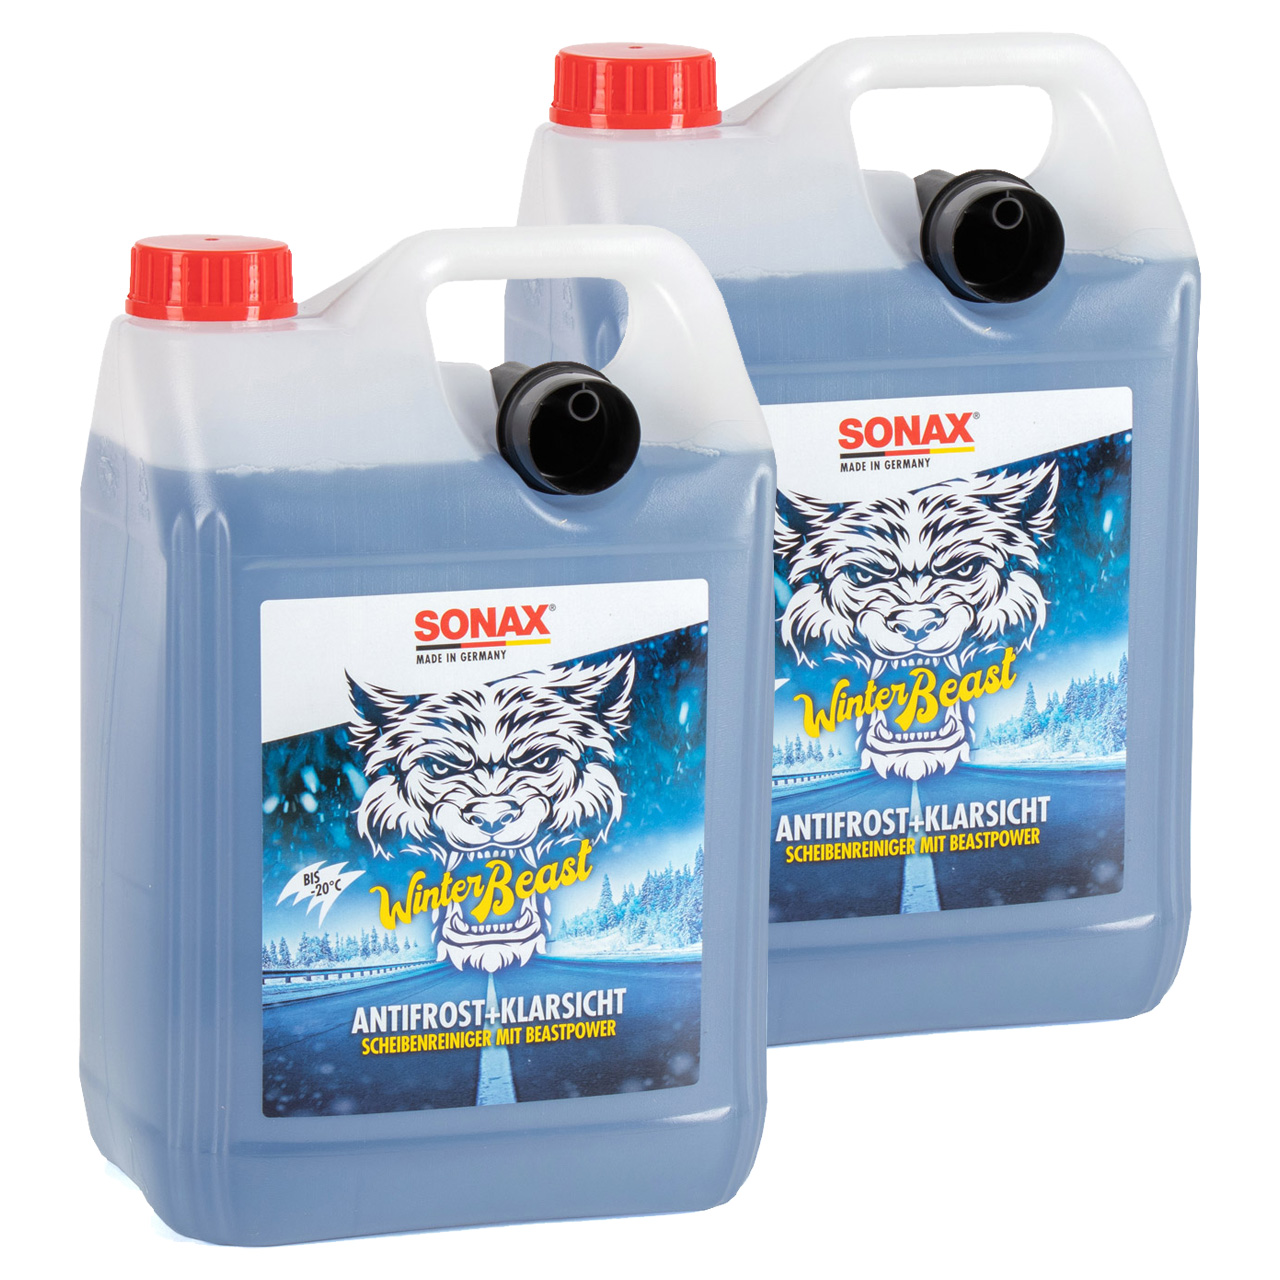 Sonax 332300 Antifrost & KlarSicht Konzentrat 1 Liter